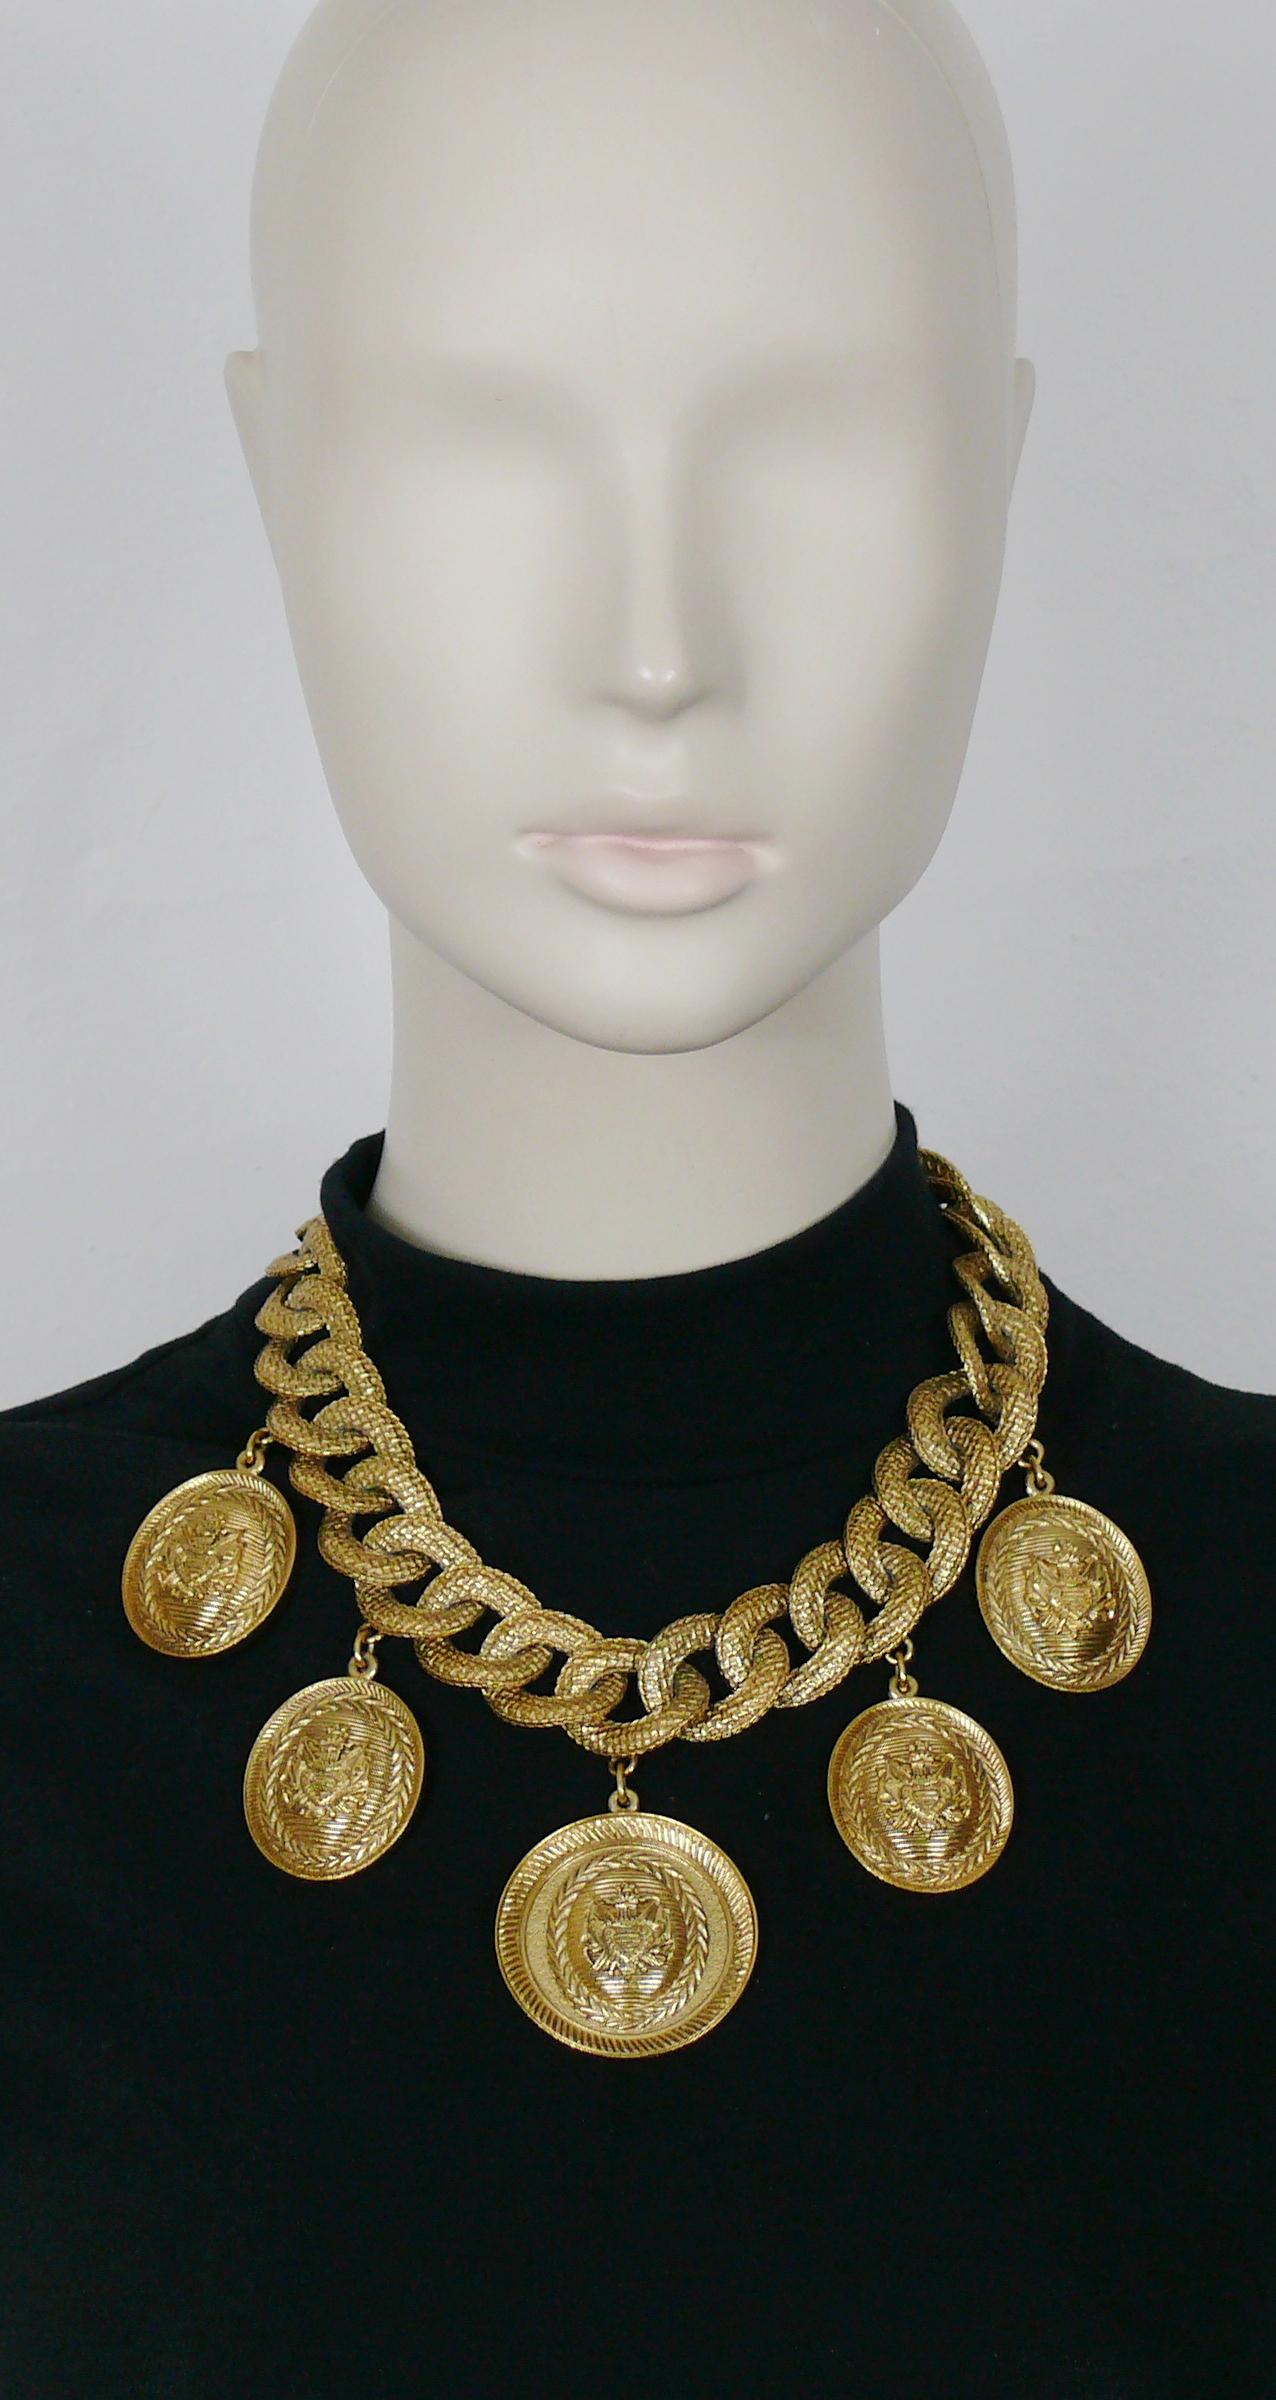 CHRISTIAN DIOR BOUTIQUE by GIANFRANCO FERRE Vintage-Halskette aus strukturierter Kette mit fünf Medaillon-Wappen.

Goldfarbene Metallbeschläge.

T-Bügel und Knebelverschluss.

Geprägtes CHRISTIAN DIOR BOUTIQUE.

Ungefähre Maße: Länge ca. 46 cm